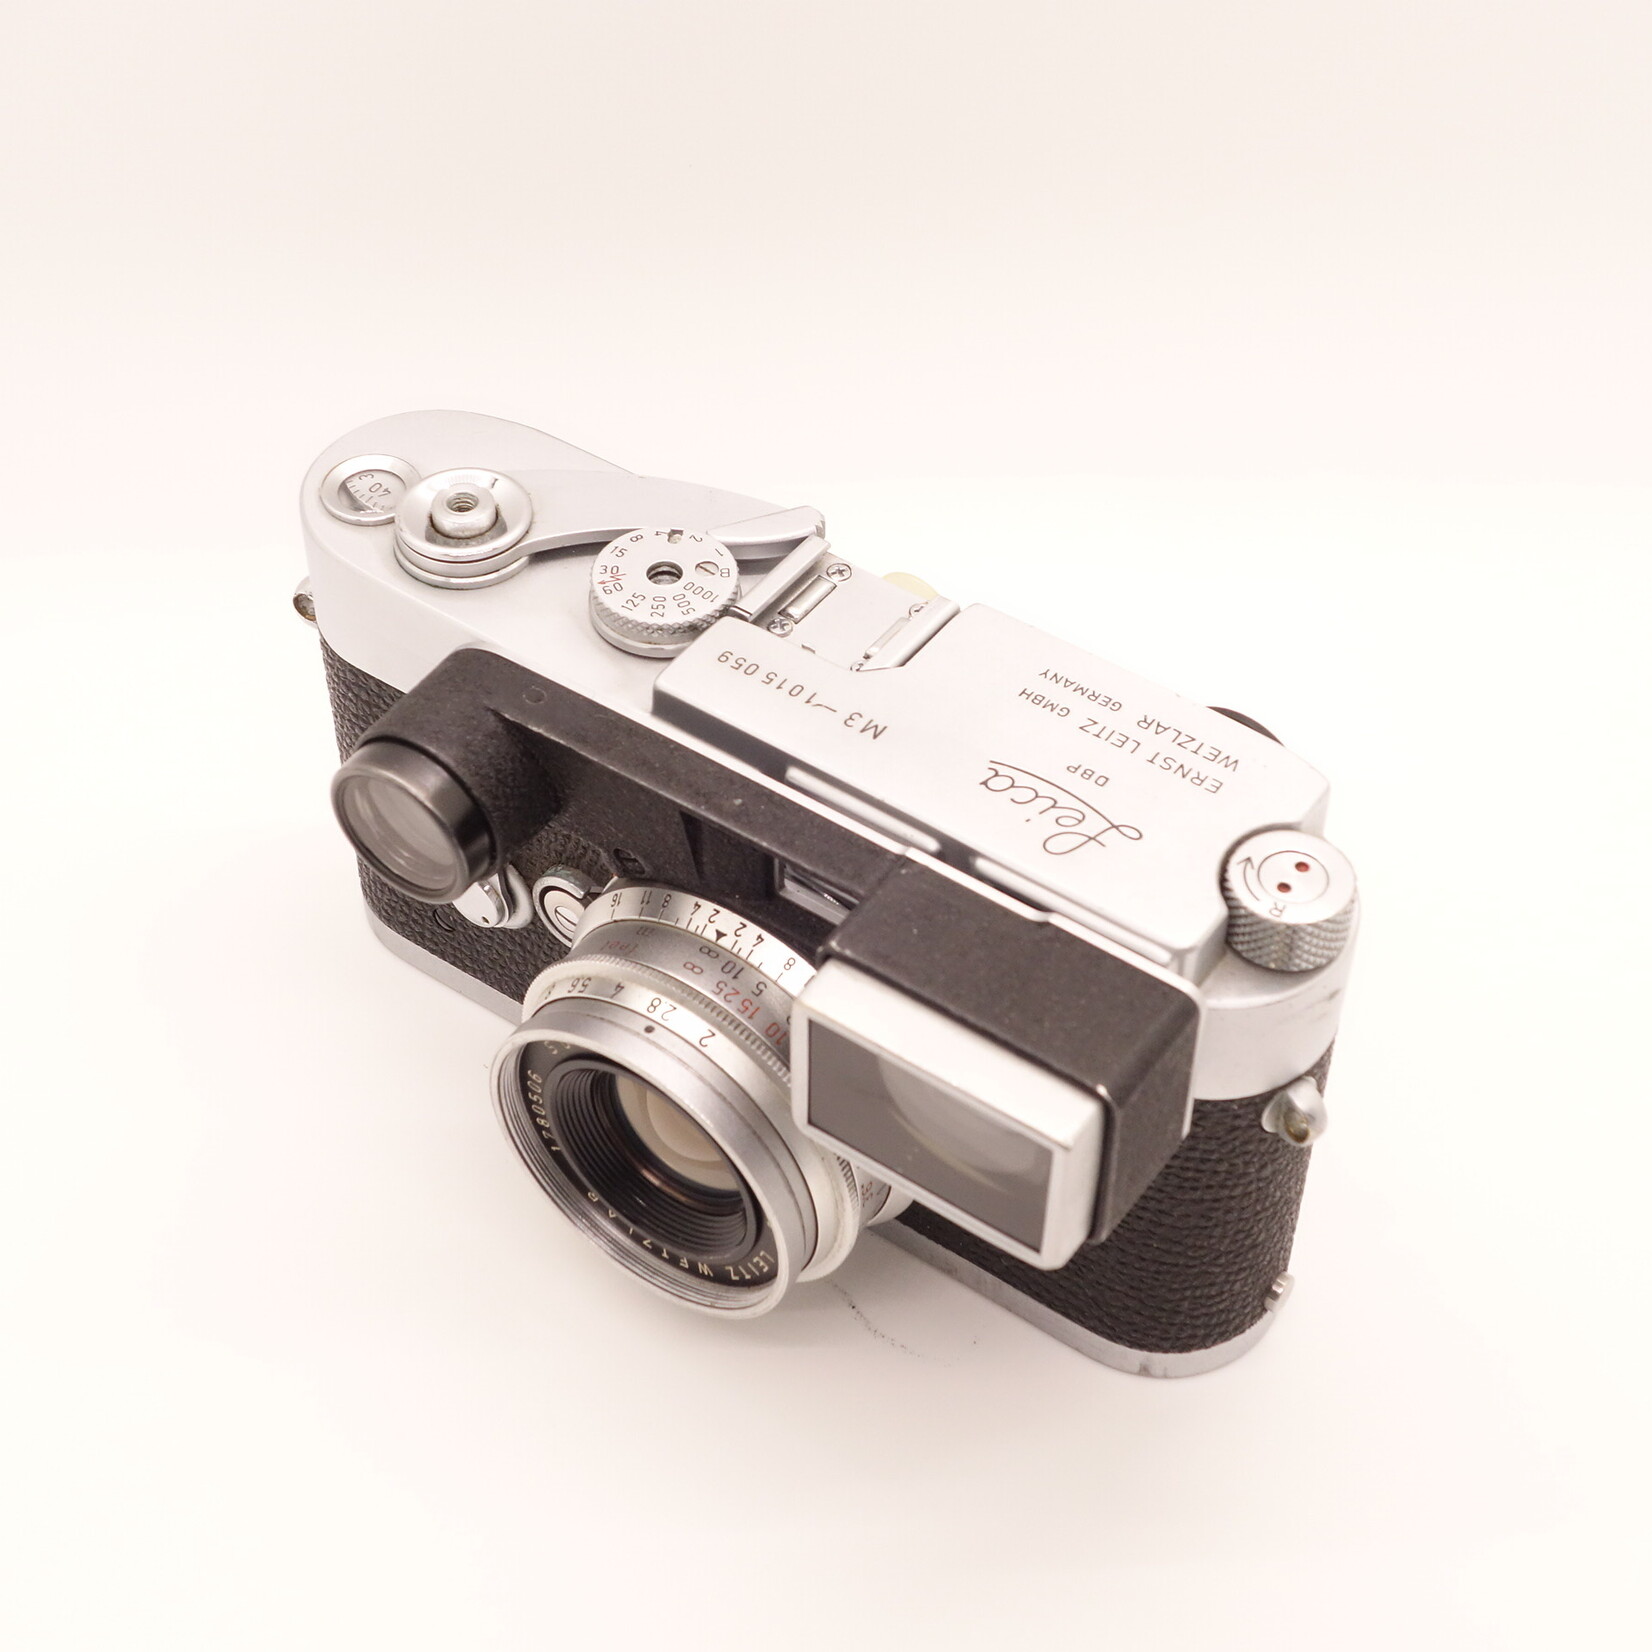 Leica Leica M3 w/ 35mm f/2 Summicron w/goggles (Used)